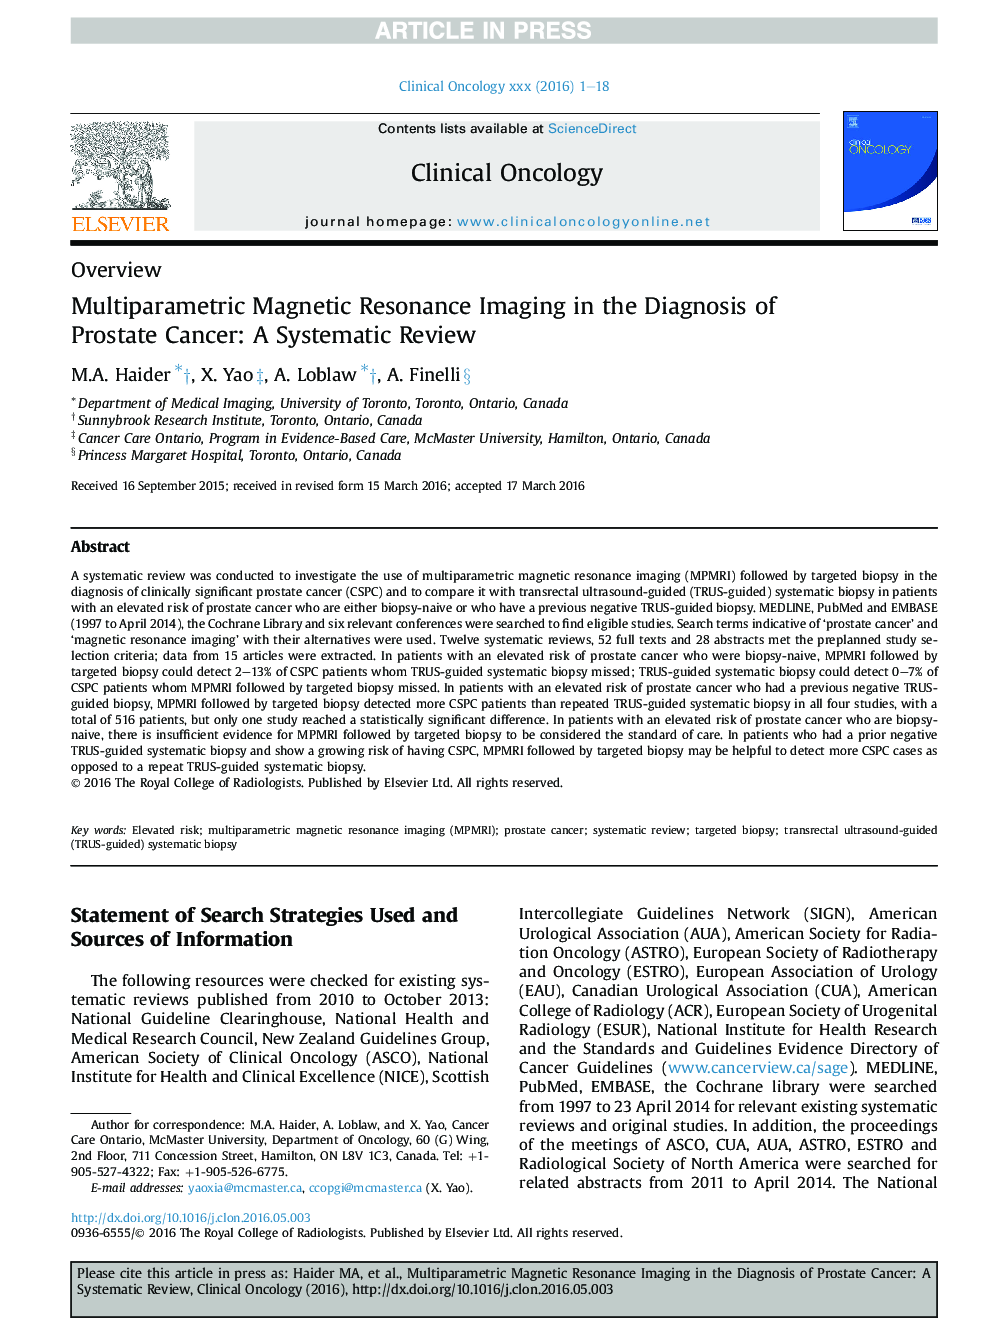 تصویربرداری رزونانس مغناطیسی چندگانه در تشخیص سرطان پروستات: یک بررسی سیستماتیک 